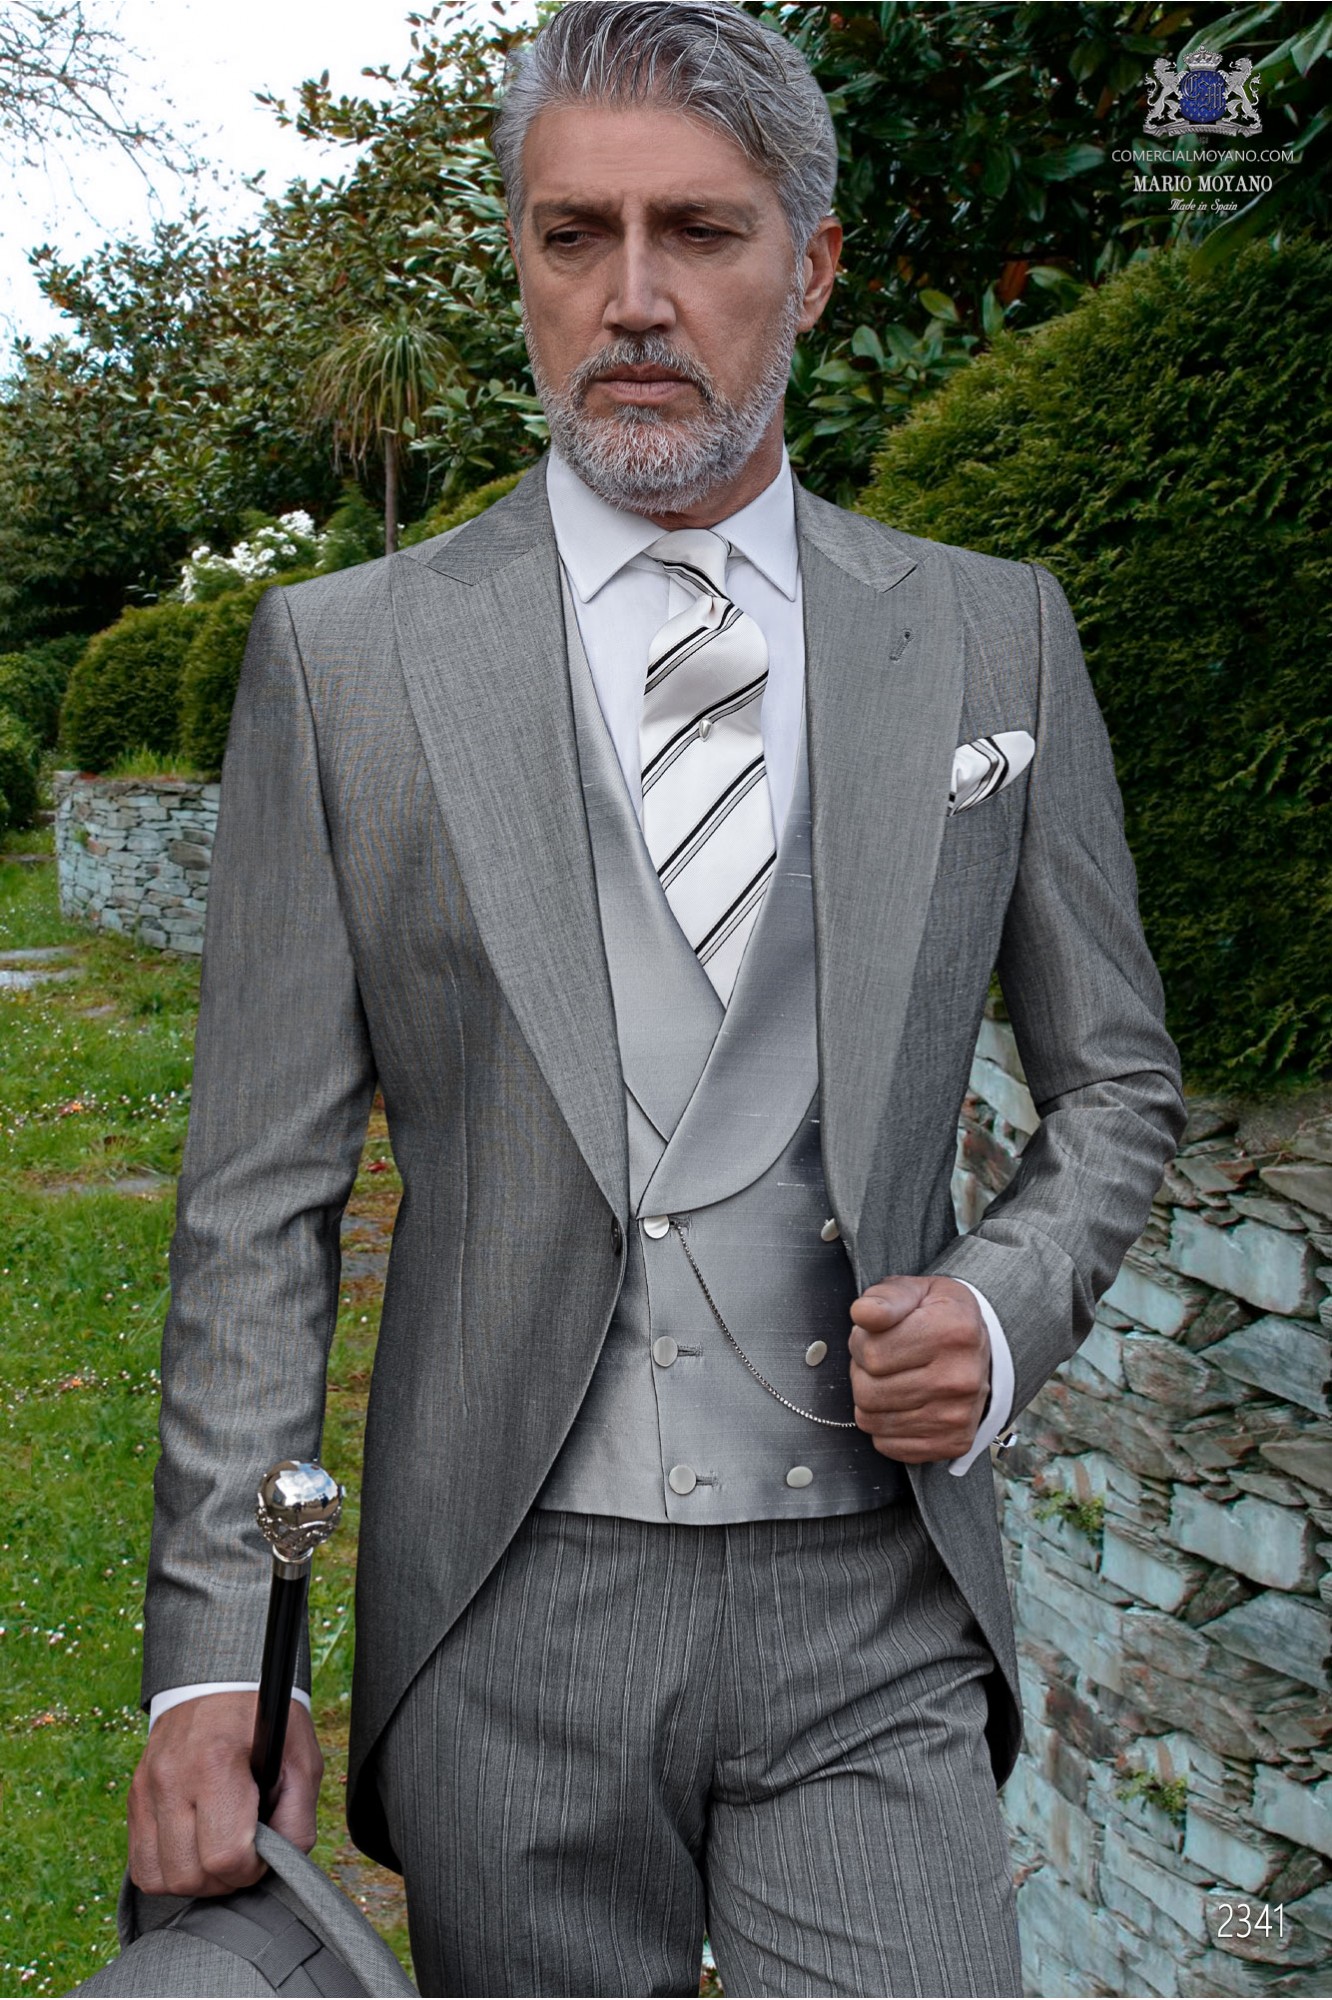 Chaqué de novio gris claro tejido lana alpaca con pantalón raya diplomática modelo: 2341 Mario Moyano colección Gentleman